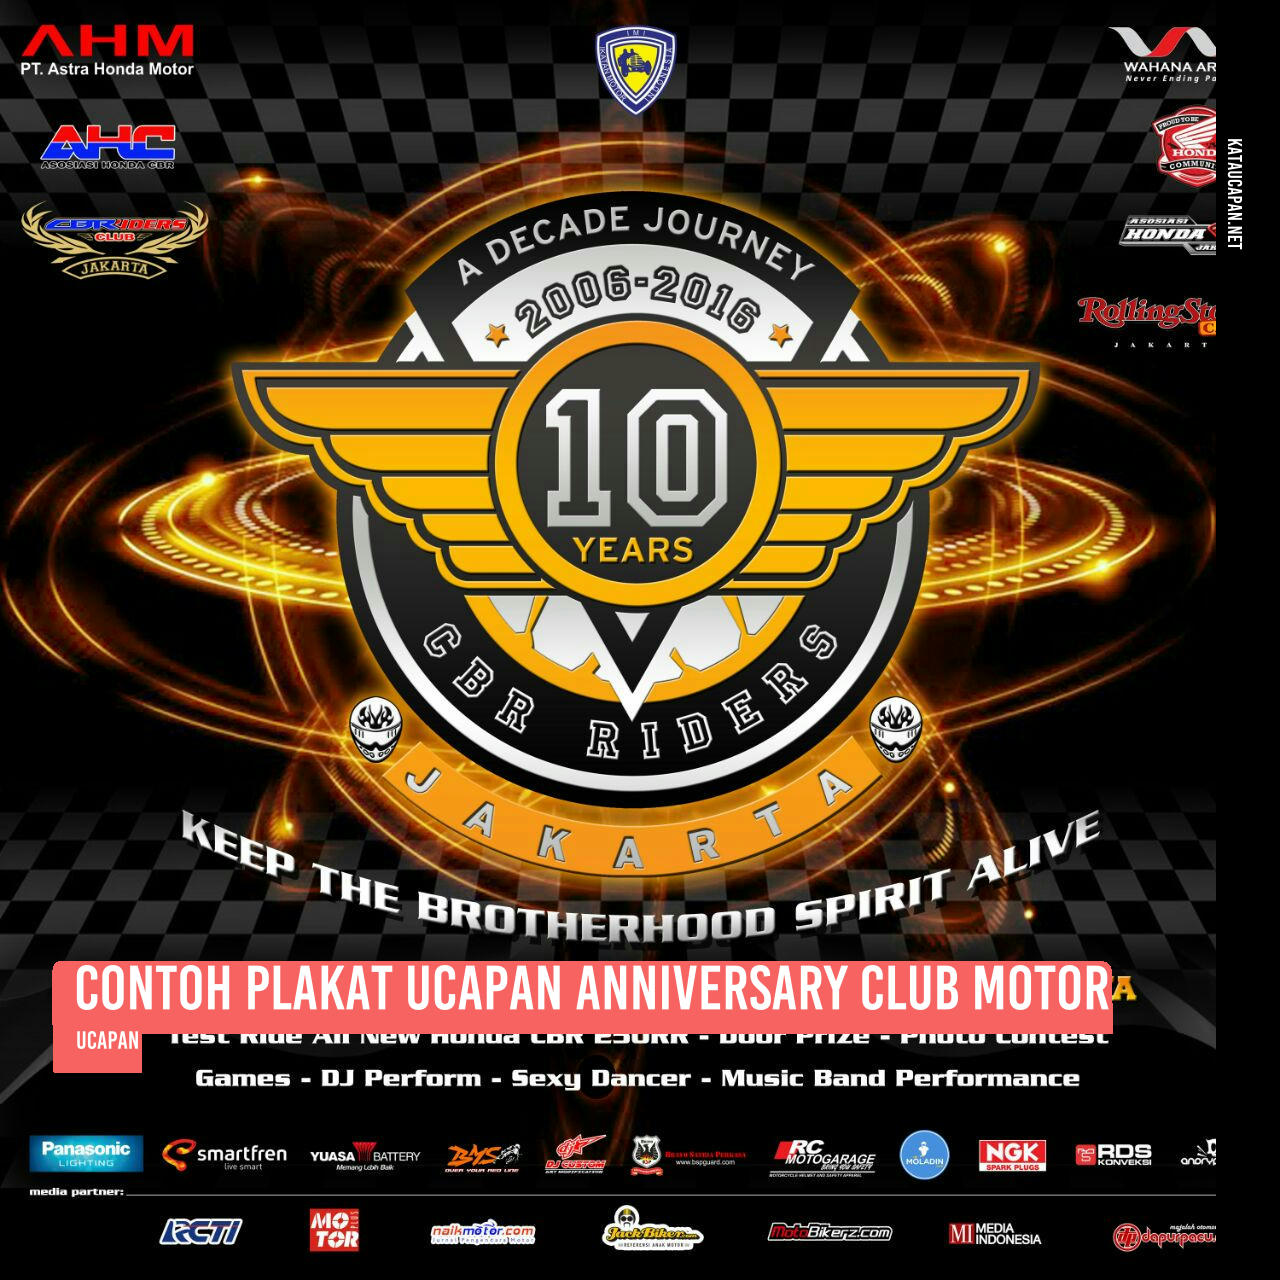 Contoh Plakat Ucapan Anniversary Club Motor